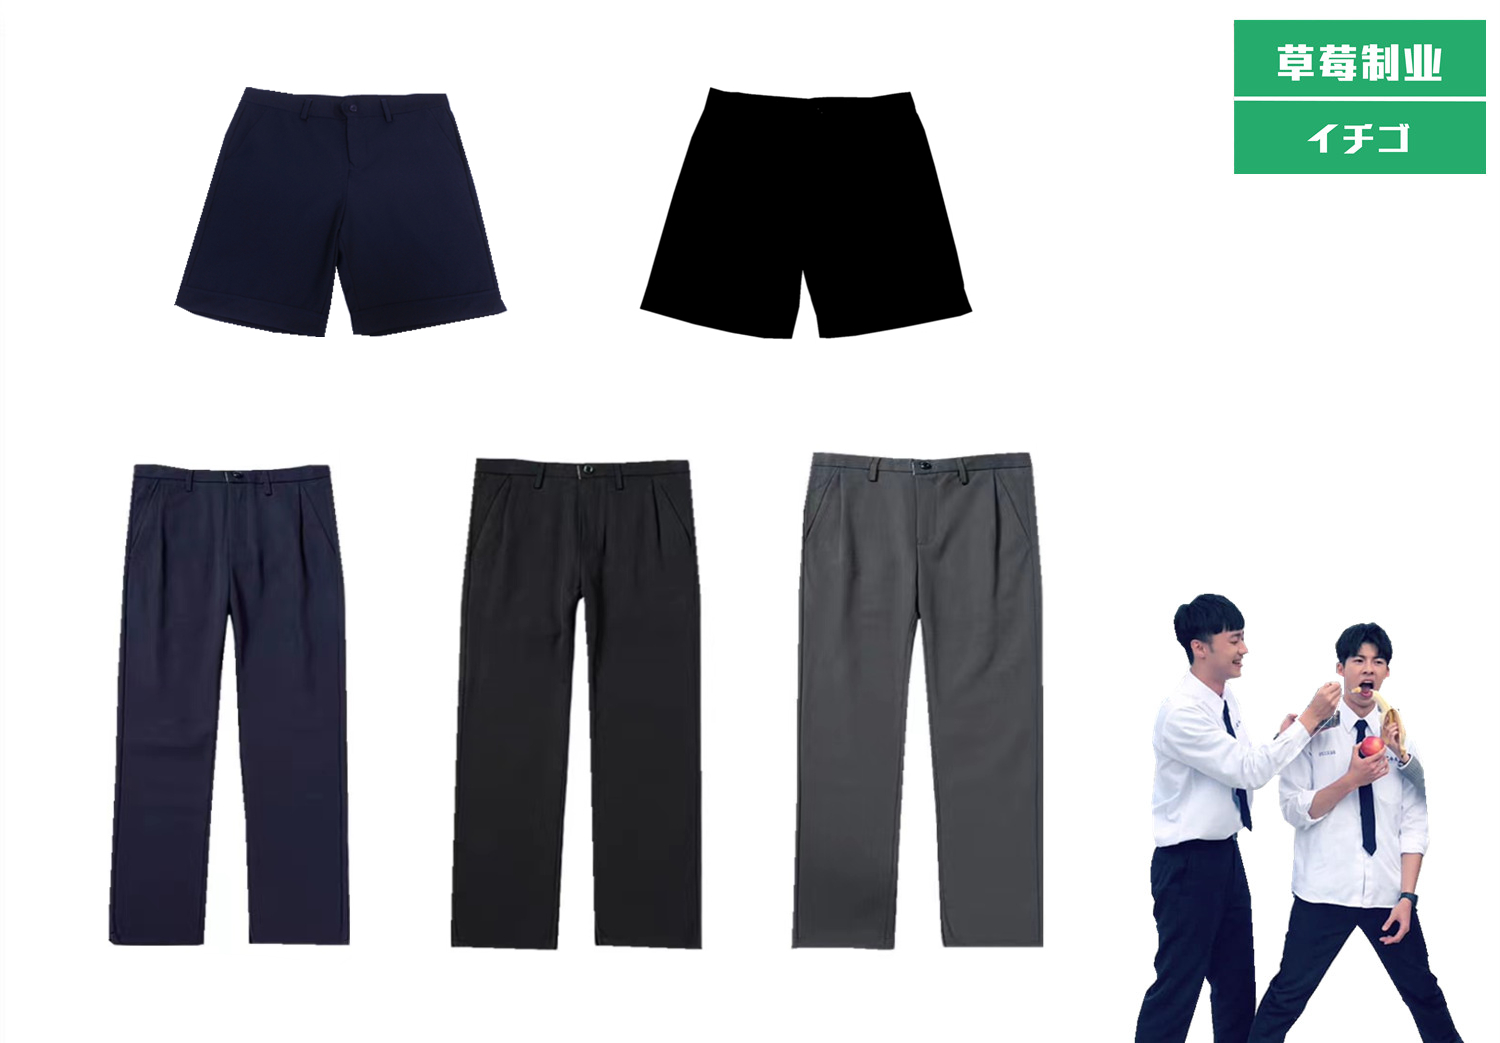 草莓家男生短裤长裤日本学生DK班服制服 学院风 西装裤子